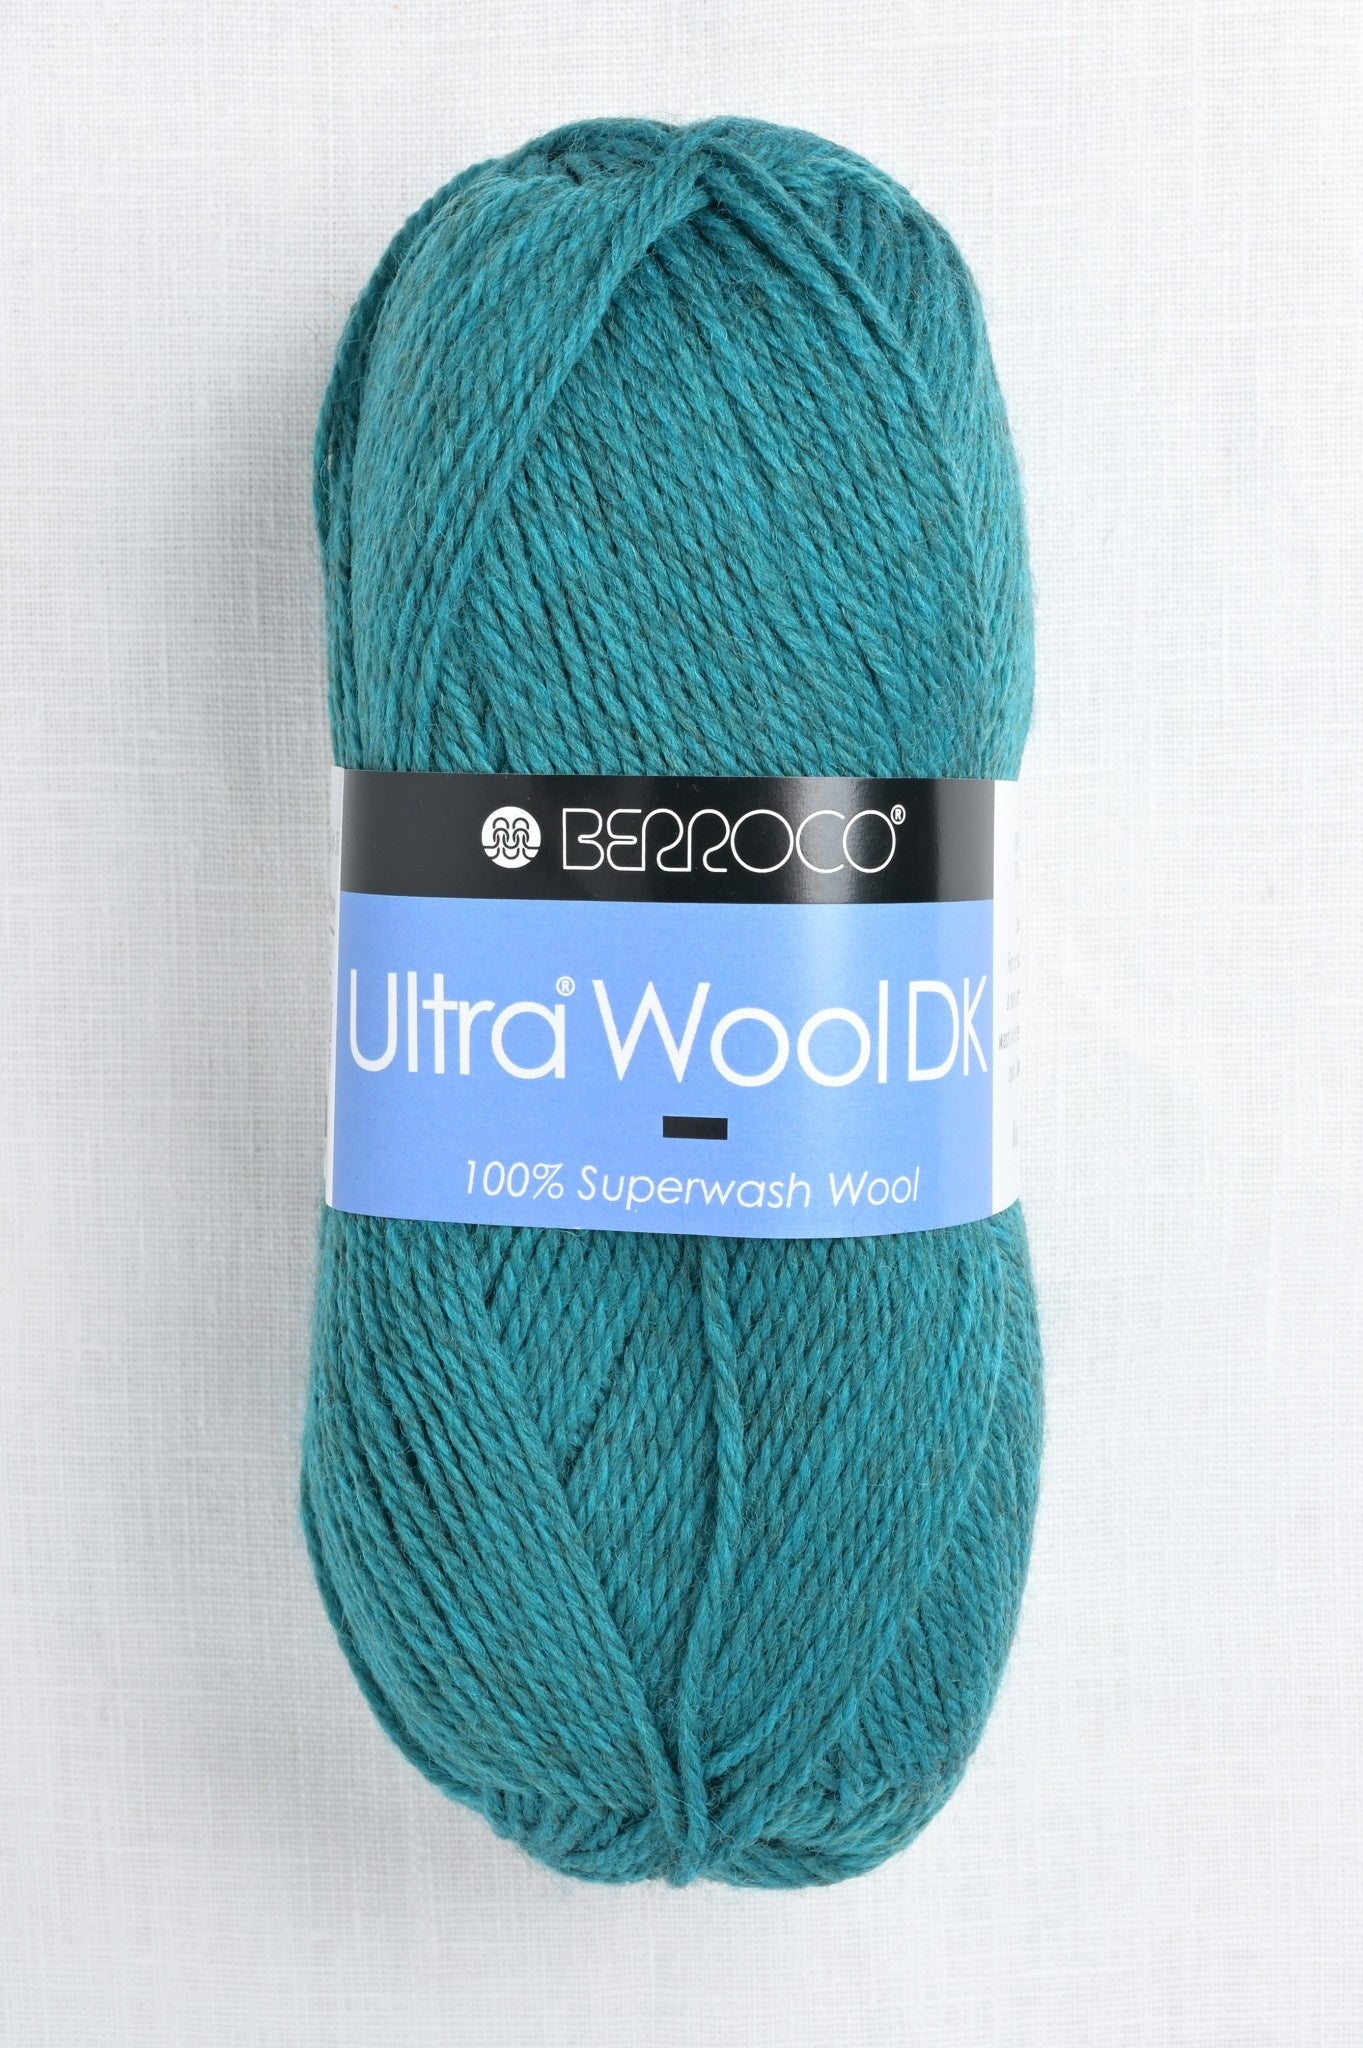 Berroco; Ultra Wool DK; Verbena 83139